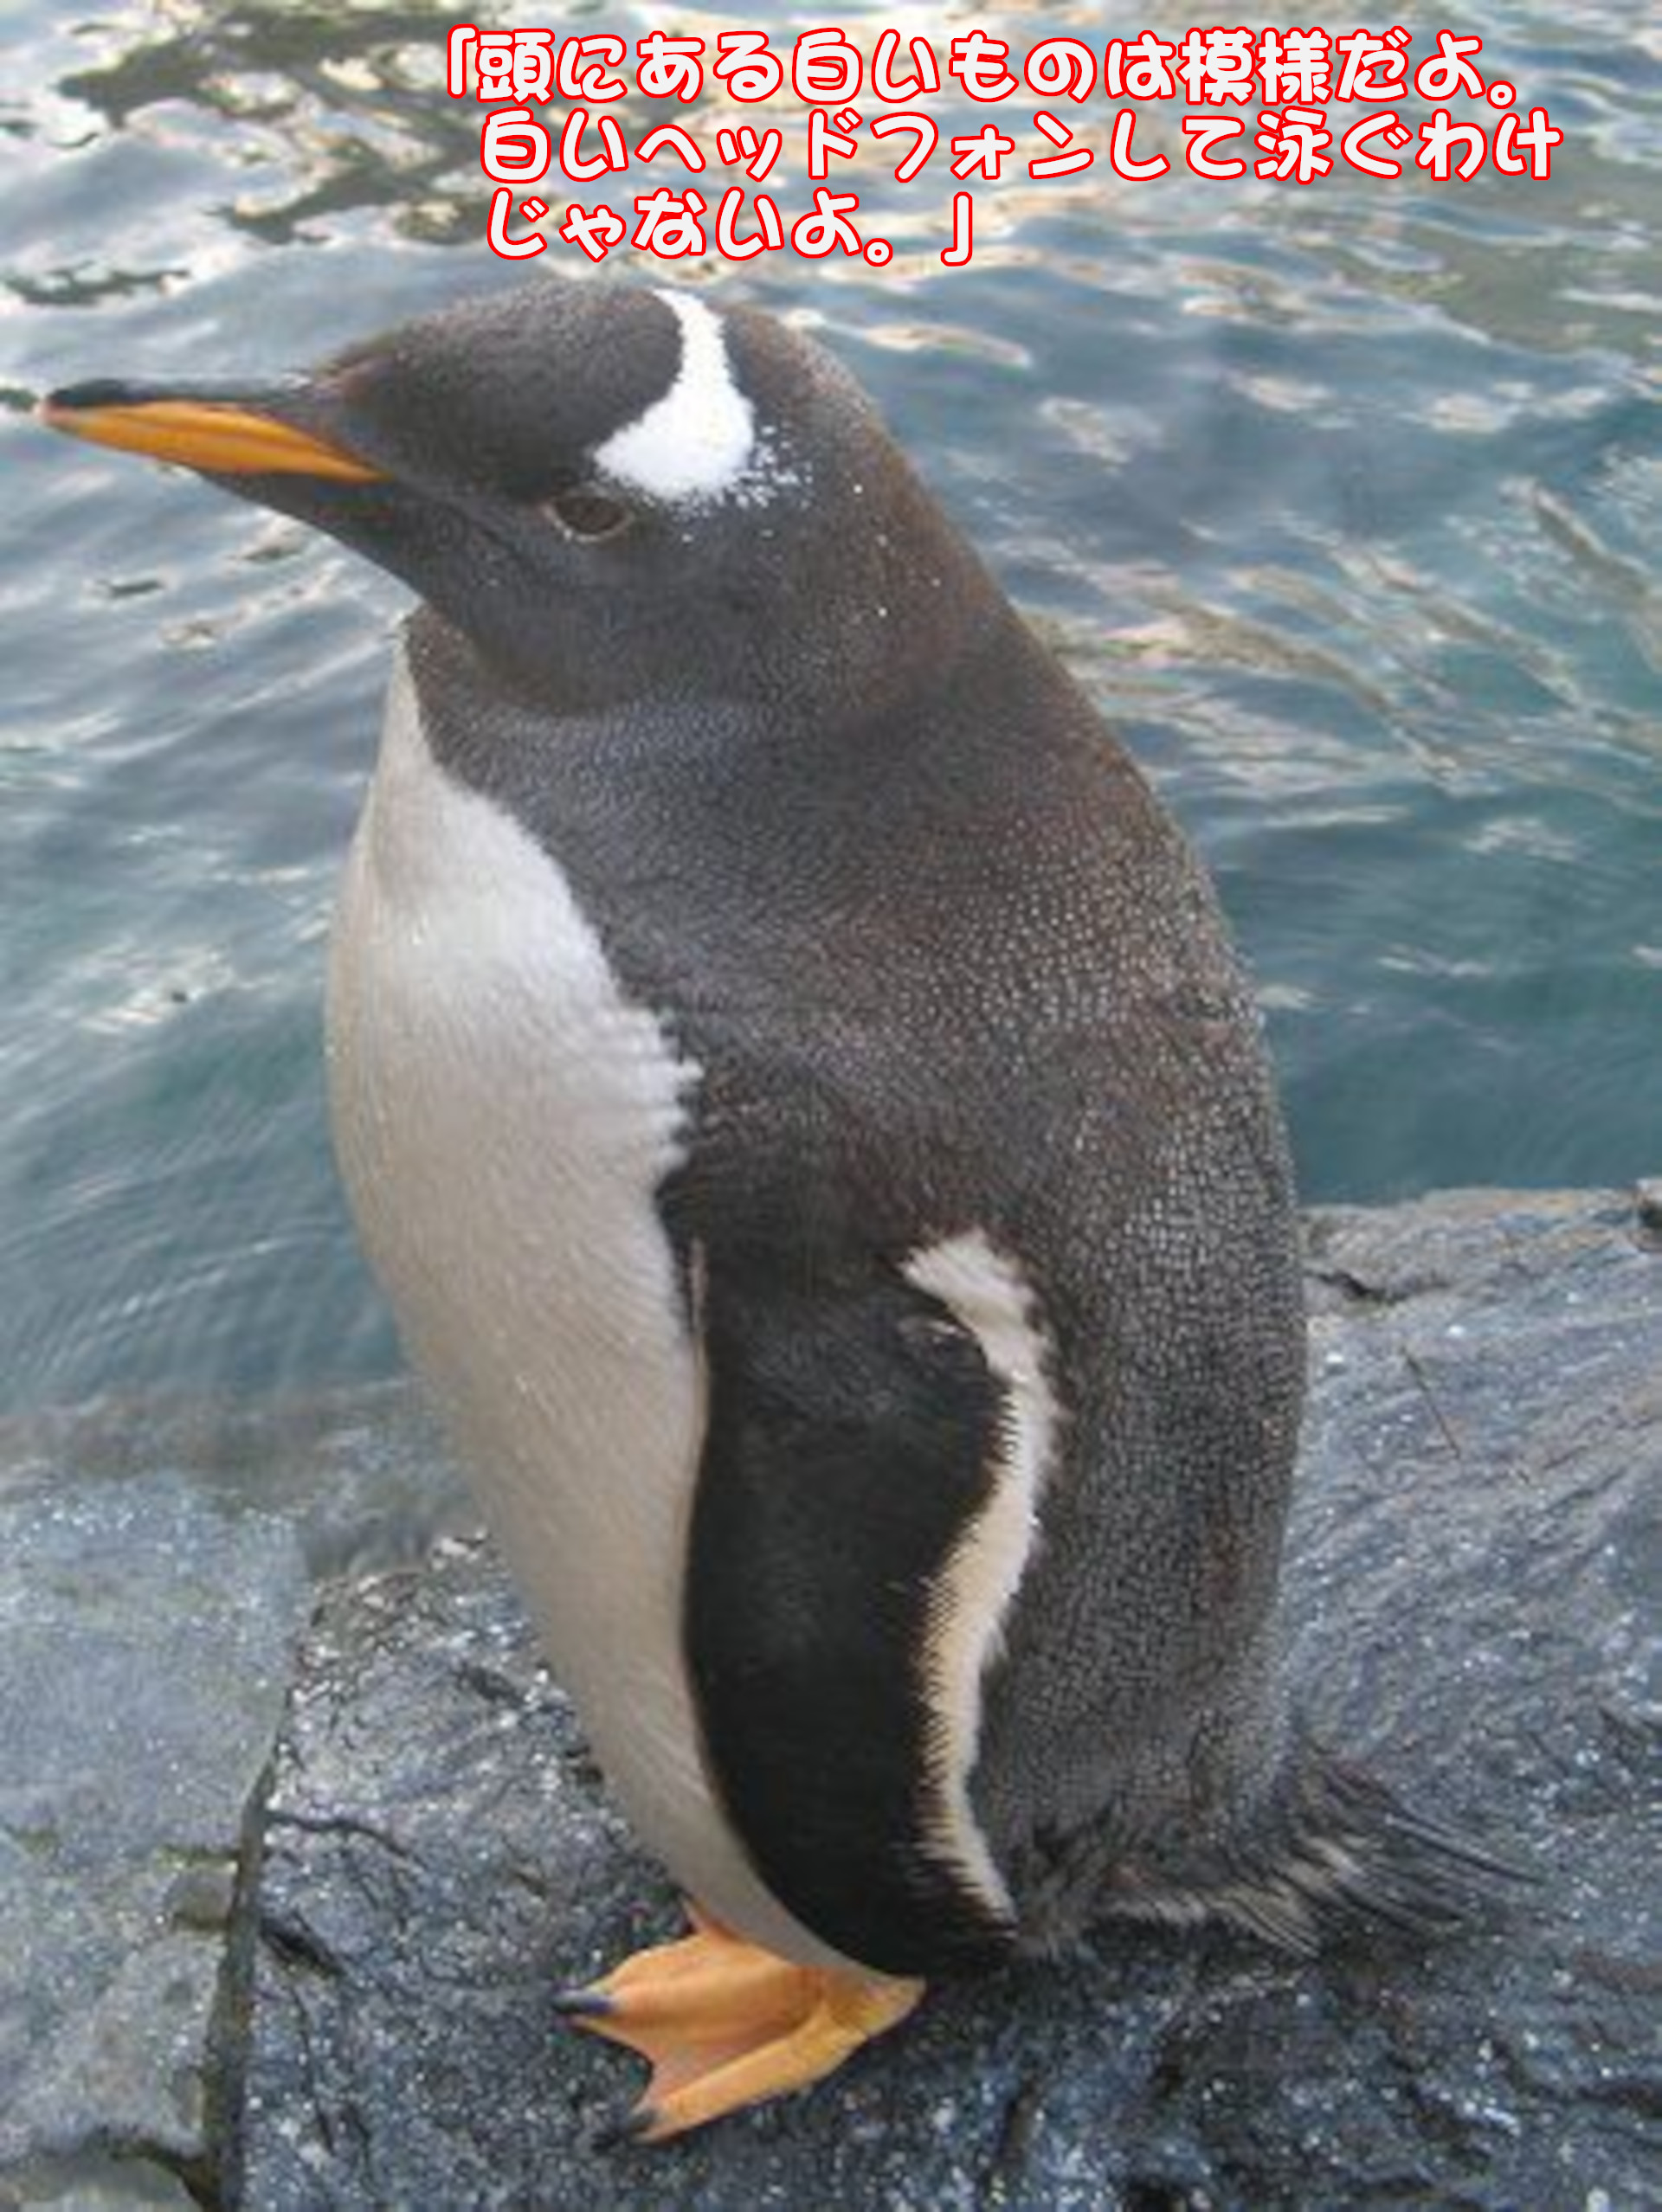 ジェンツーペンギン
「頭にある白いものは模様だよ。白いヘッドフォンして泳ぐわけじゃないよ。」